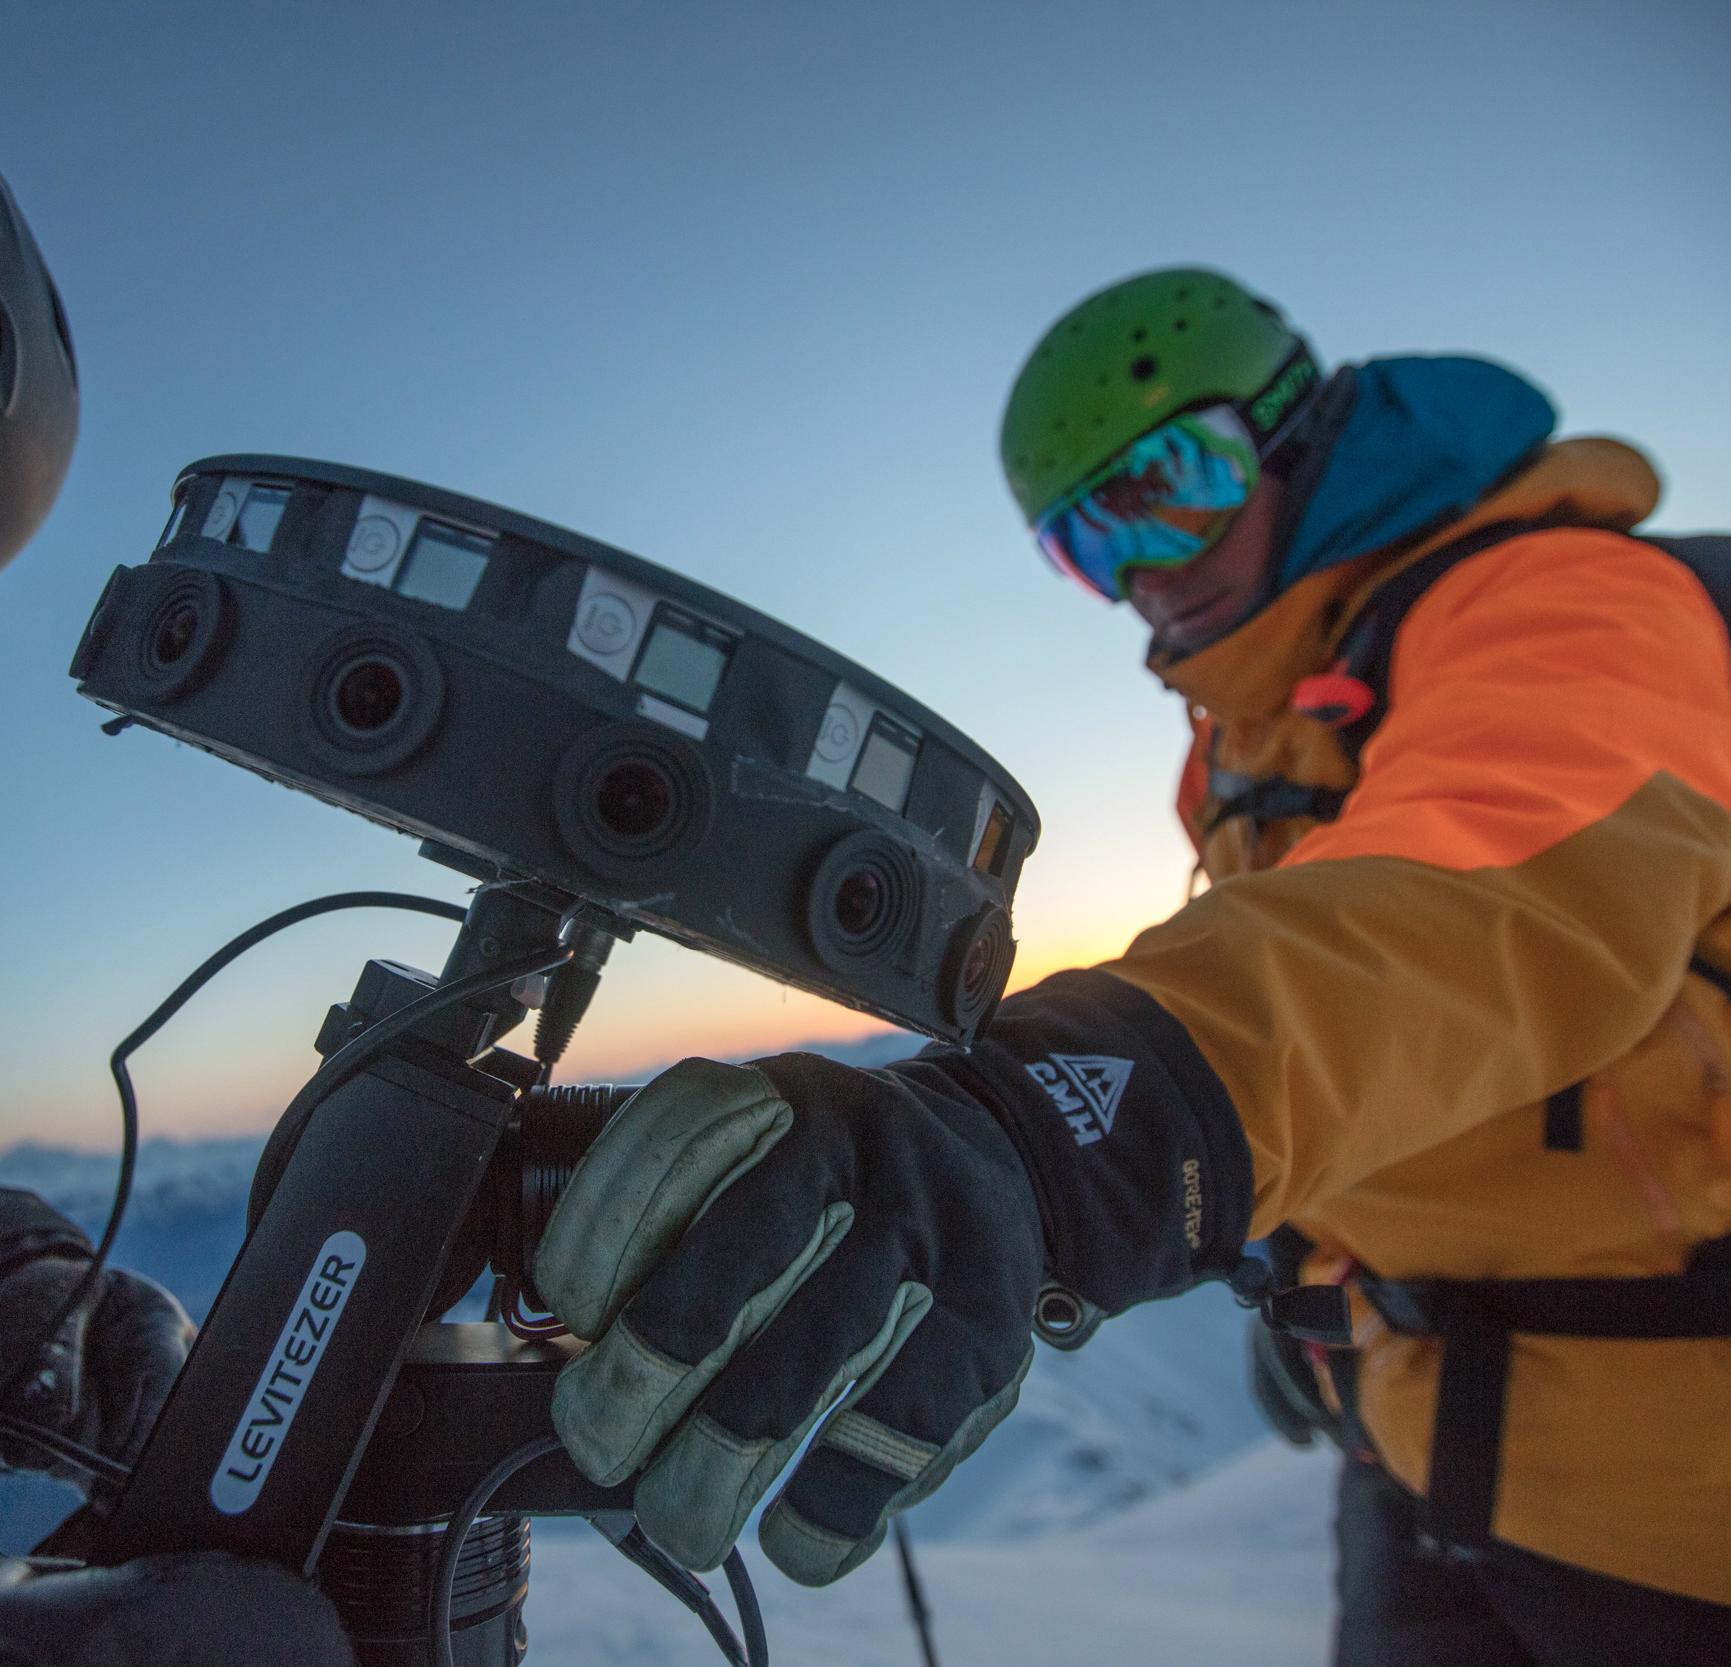 A ski guide operating a camera